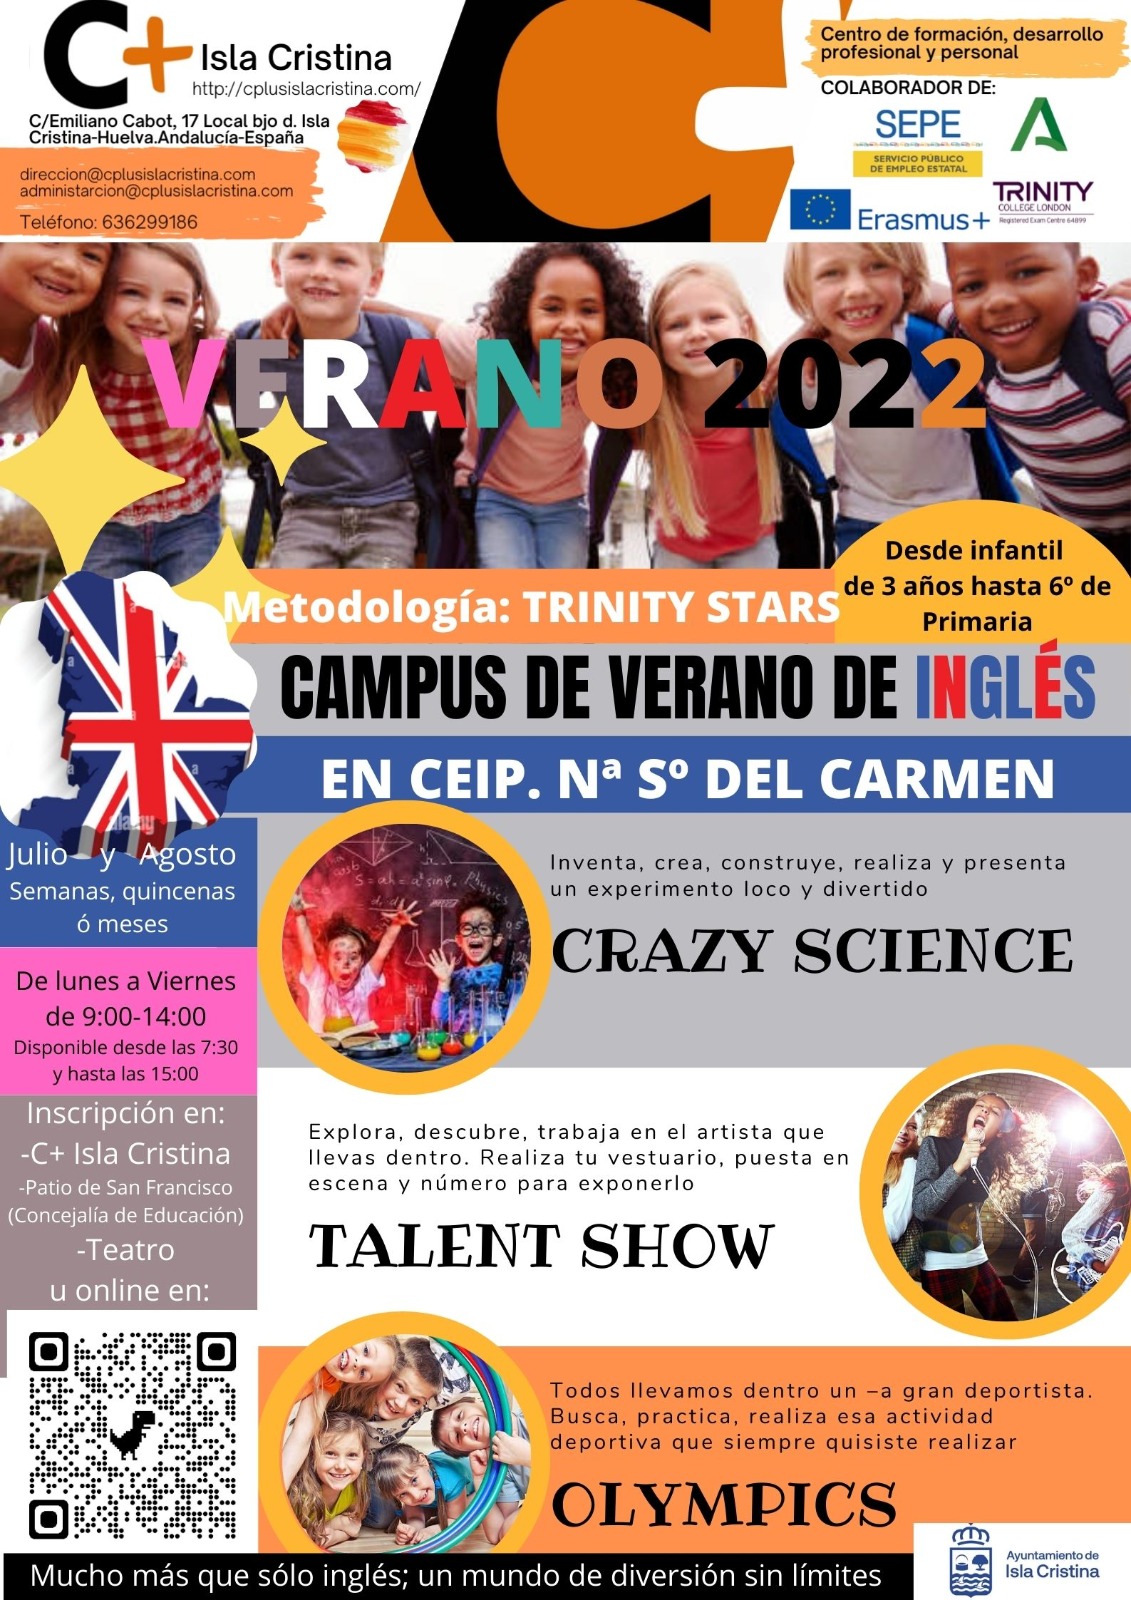 El Ayuntamiento de Isla Cristina pone en marcha un campamento de verano de inglés